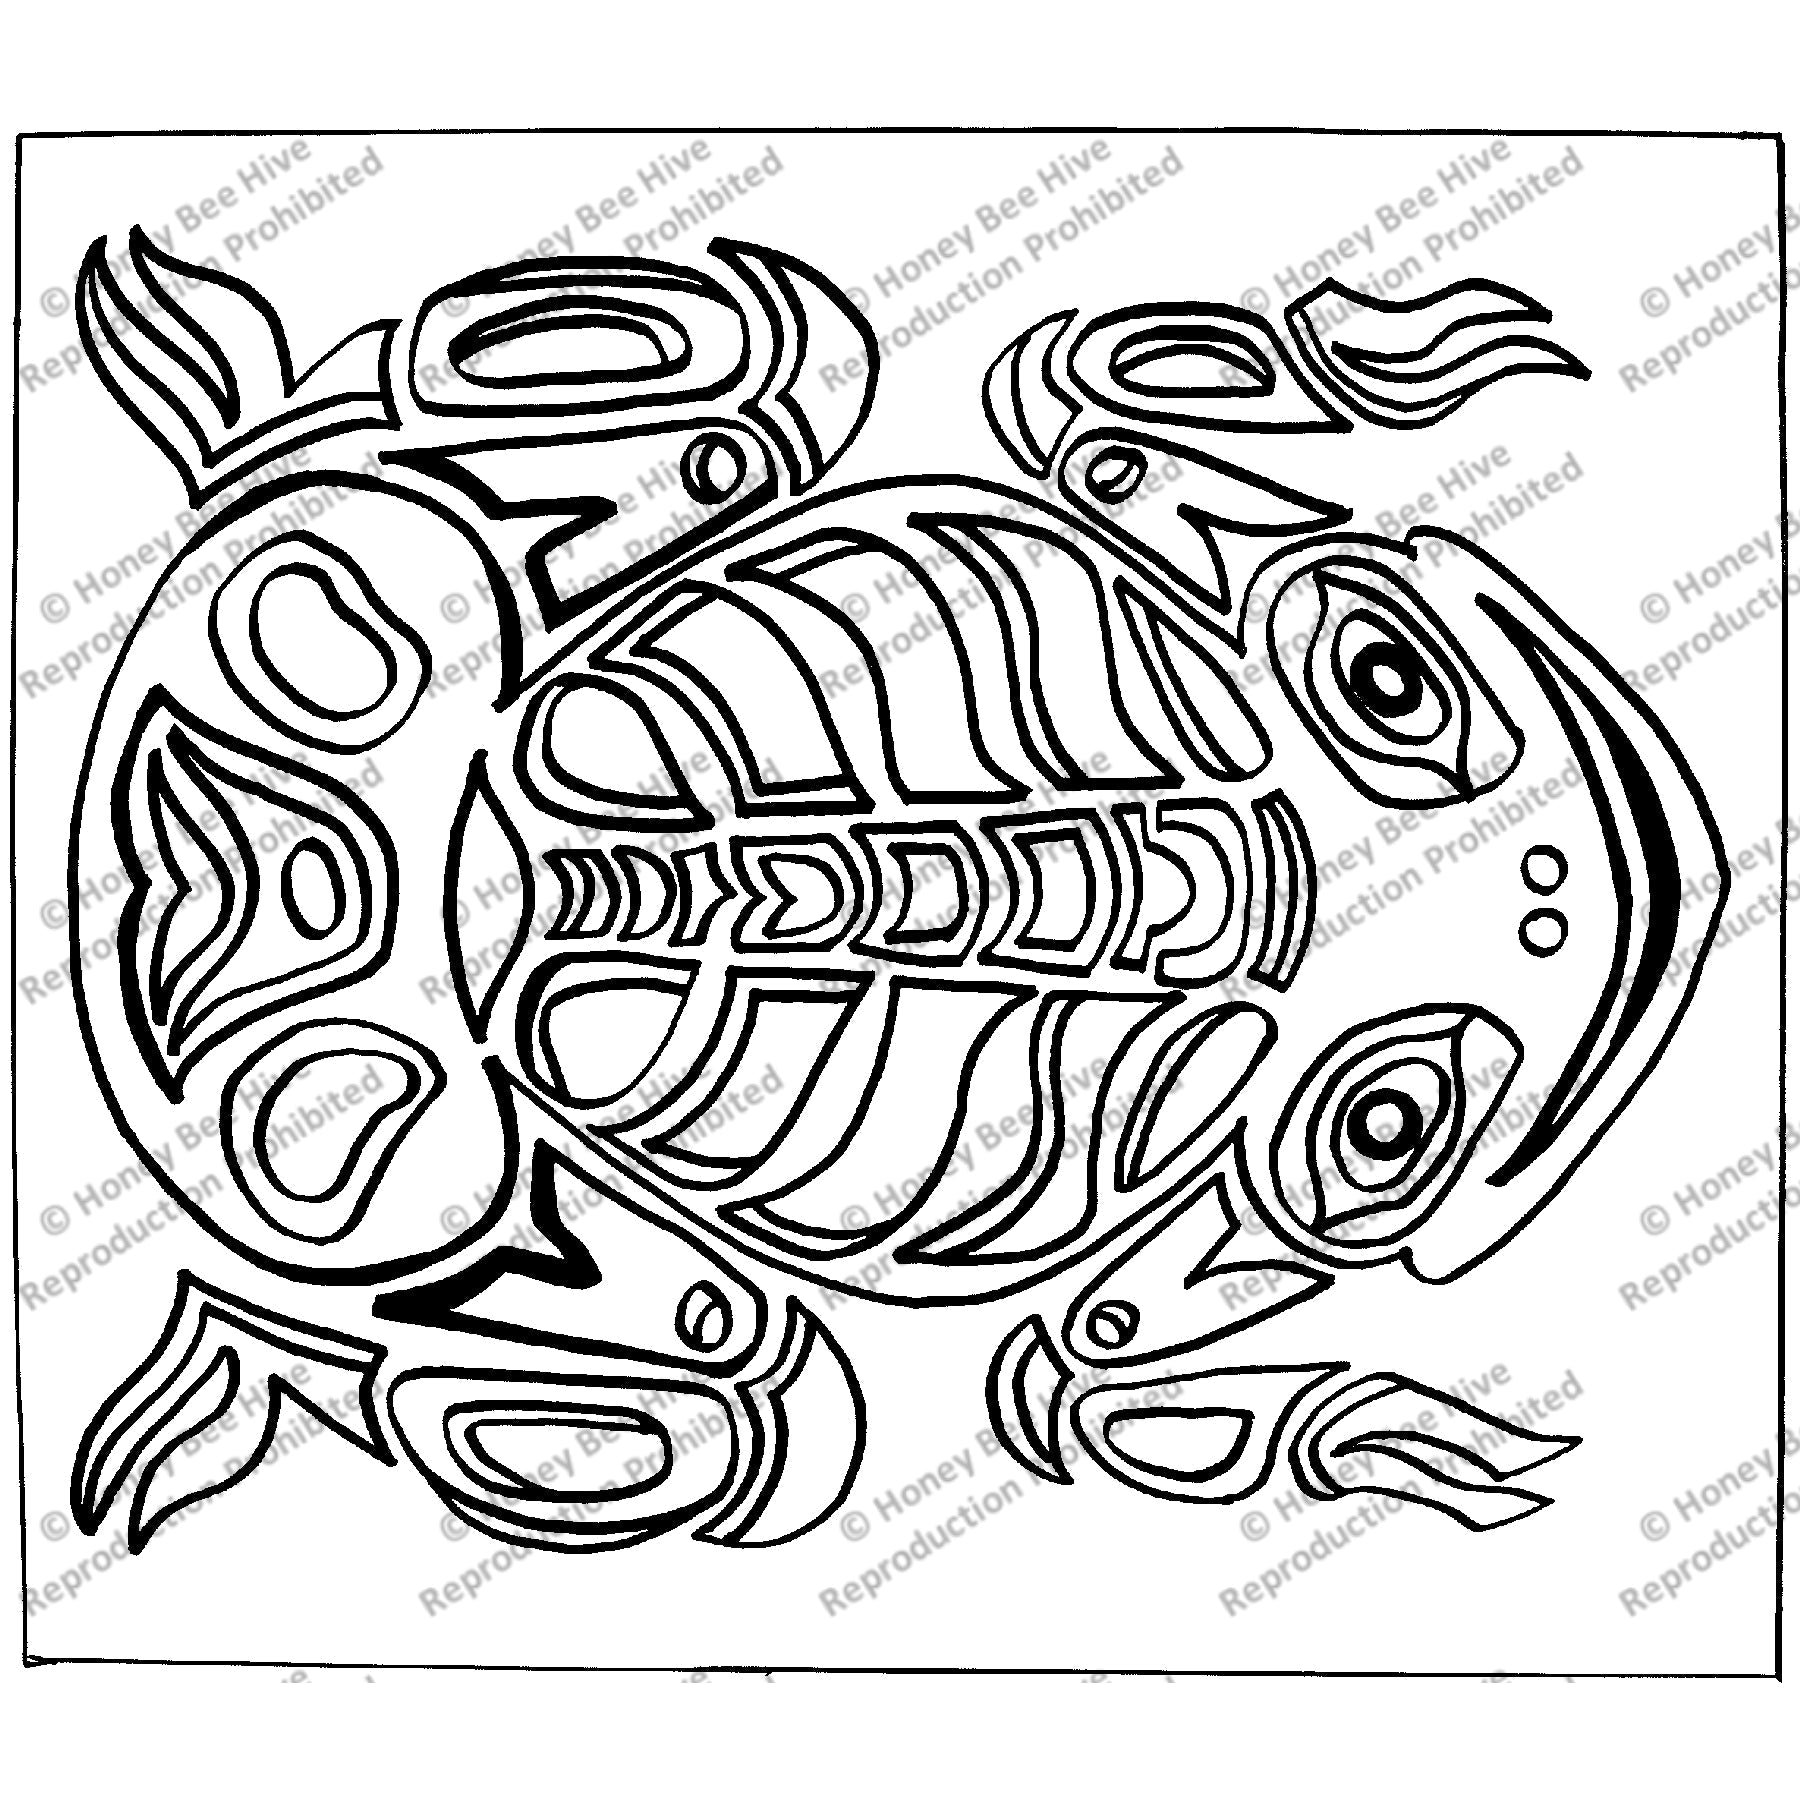 Eastern Native American Frog, rug hooking pattern